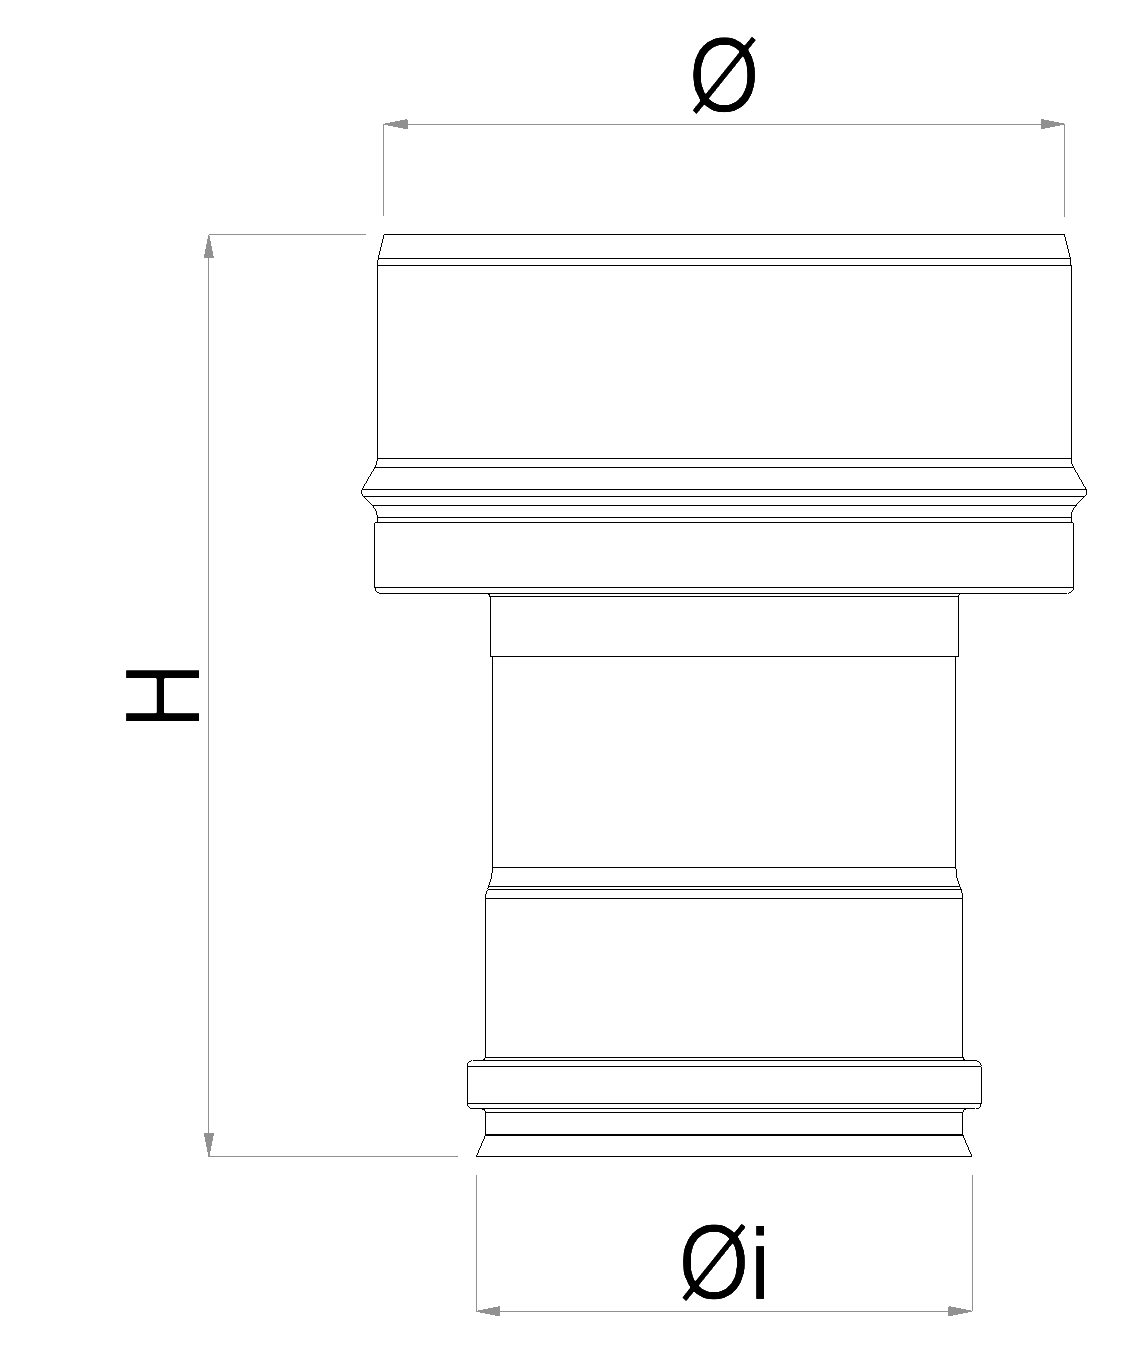 Technical sheet Adapter for Boiler